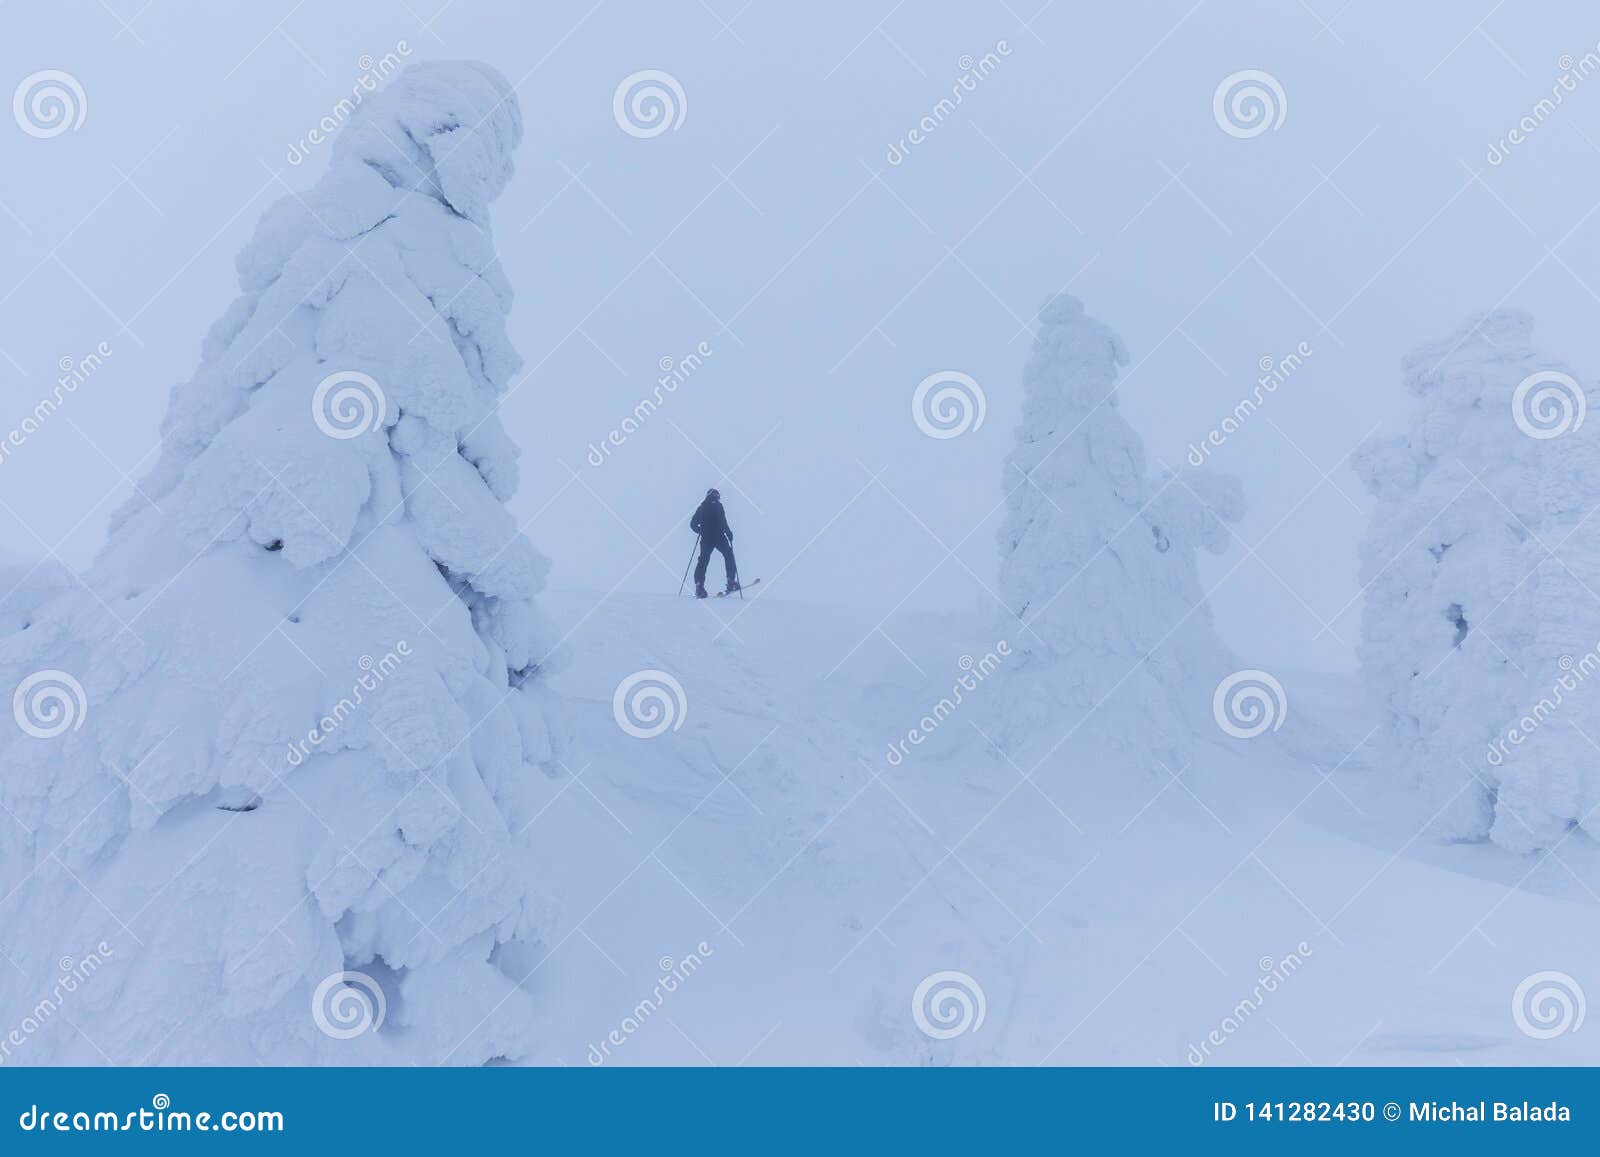 Esquiador de Backcountry que empuja a través de la niebla en una cuesta nevosa Esquí que viaja en condiciones del invierno crudo Tourer del esquí que se divierte adentro en las montañas Paisaje alpino del invierno y tiempo amplio de la Navidad del paisaje de la montaña Feliz Año Nuevo